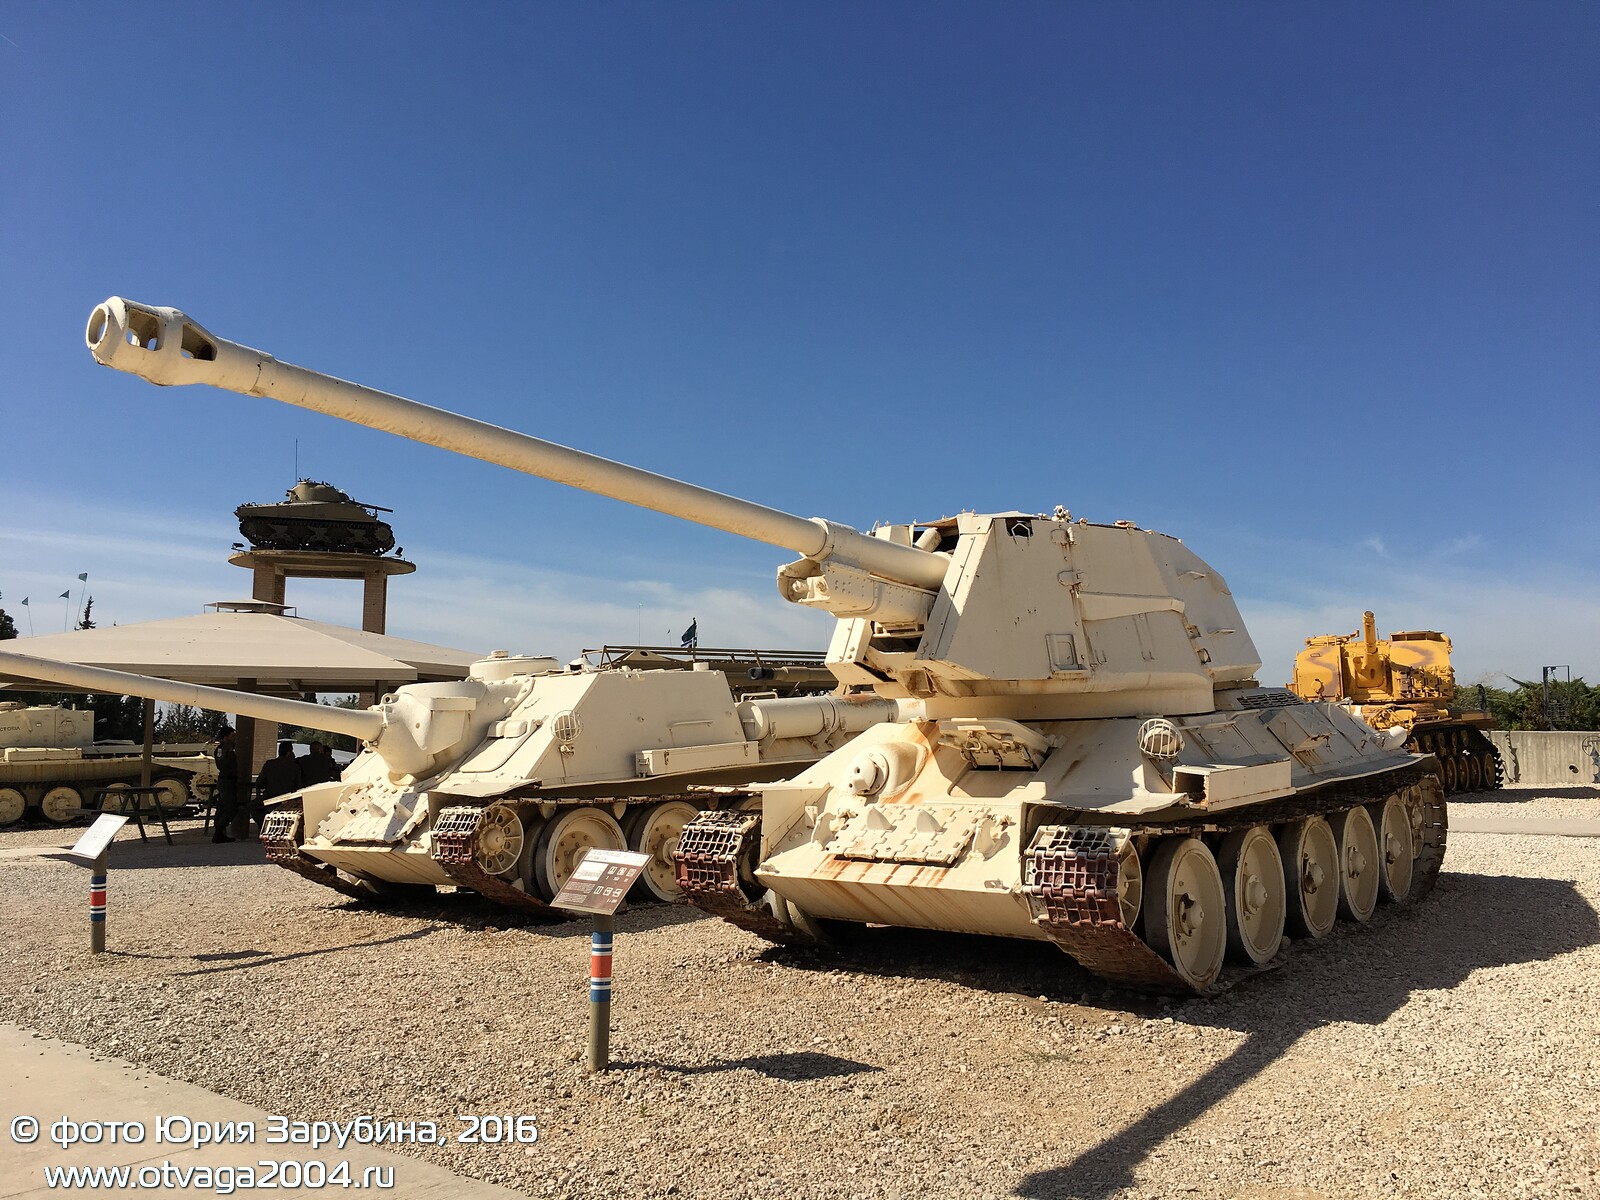 Музей танковых войск в Израиле - фотообзор, часть 2